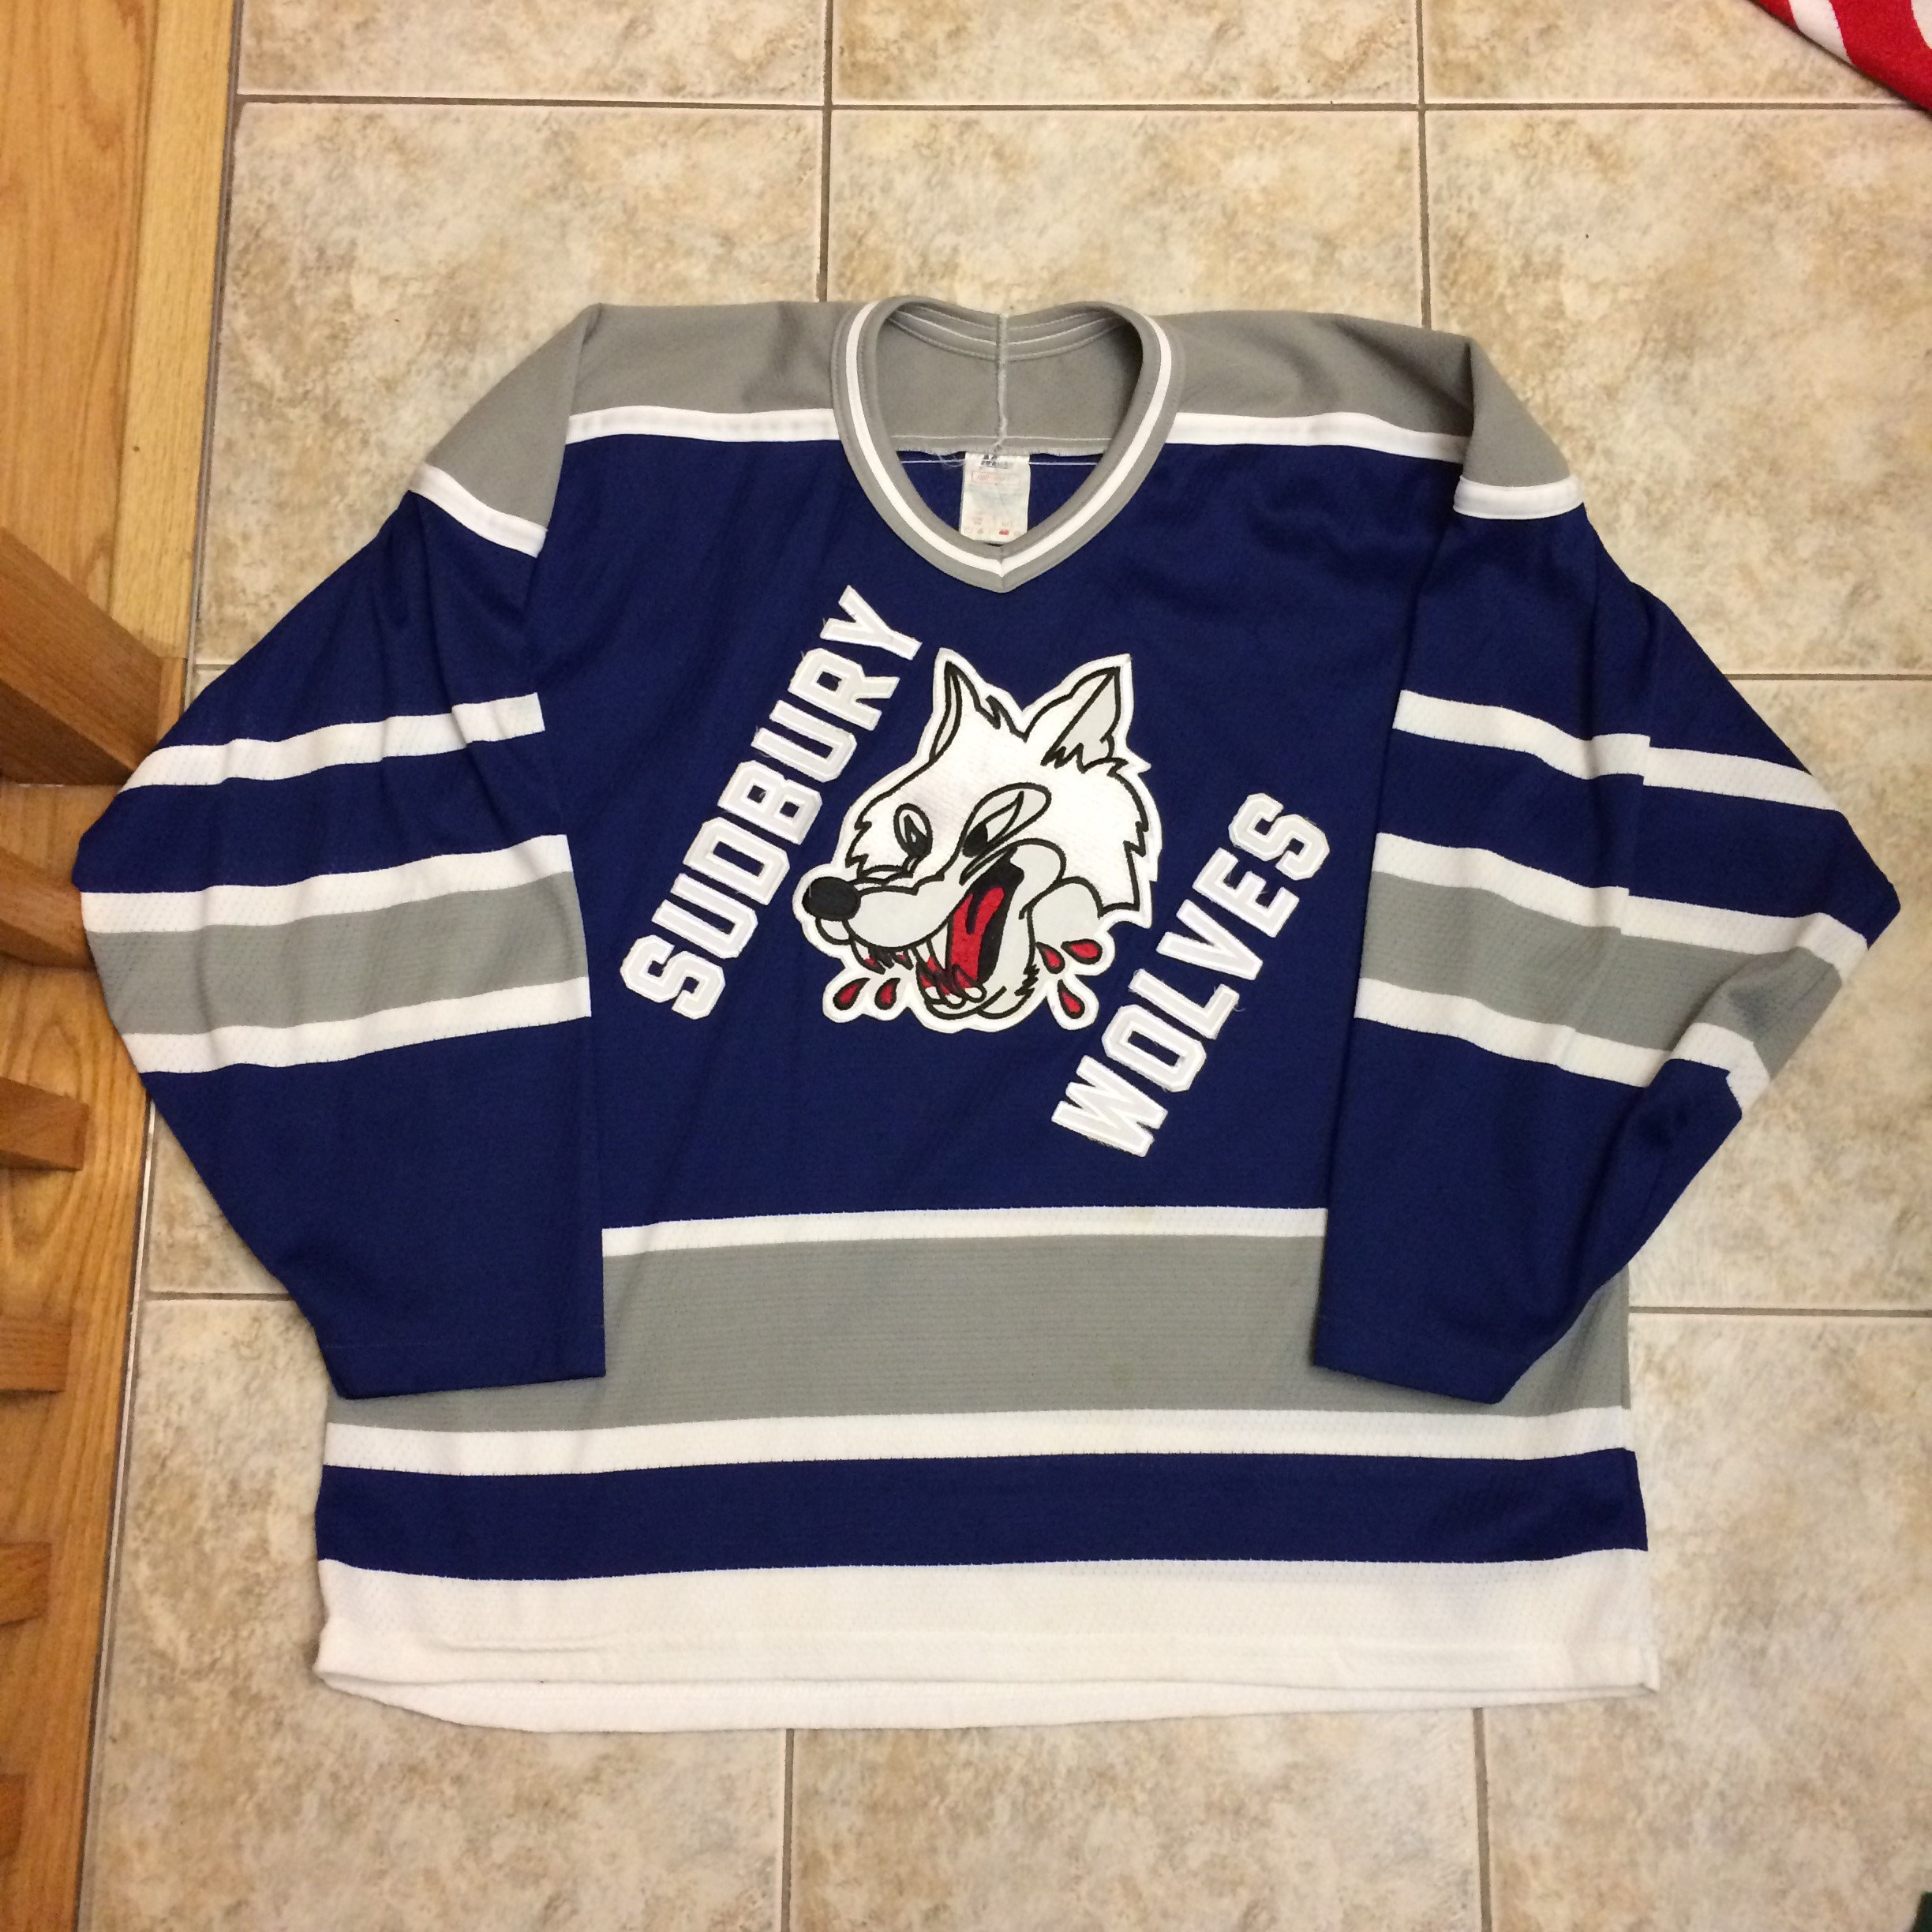 Vintage Sudbury Wolves Hockey Jersey Size Large 1990s